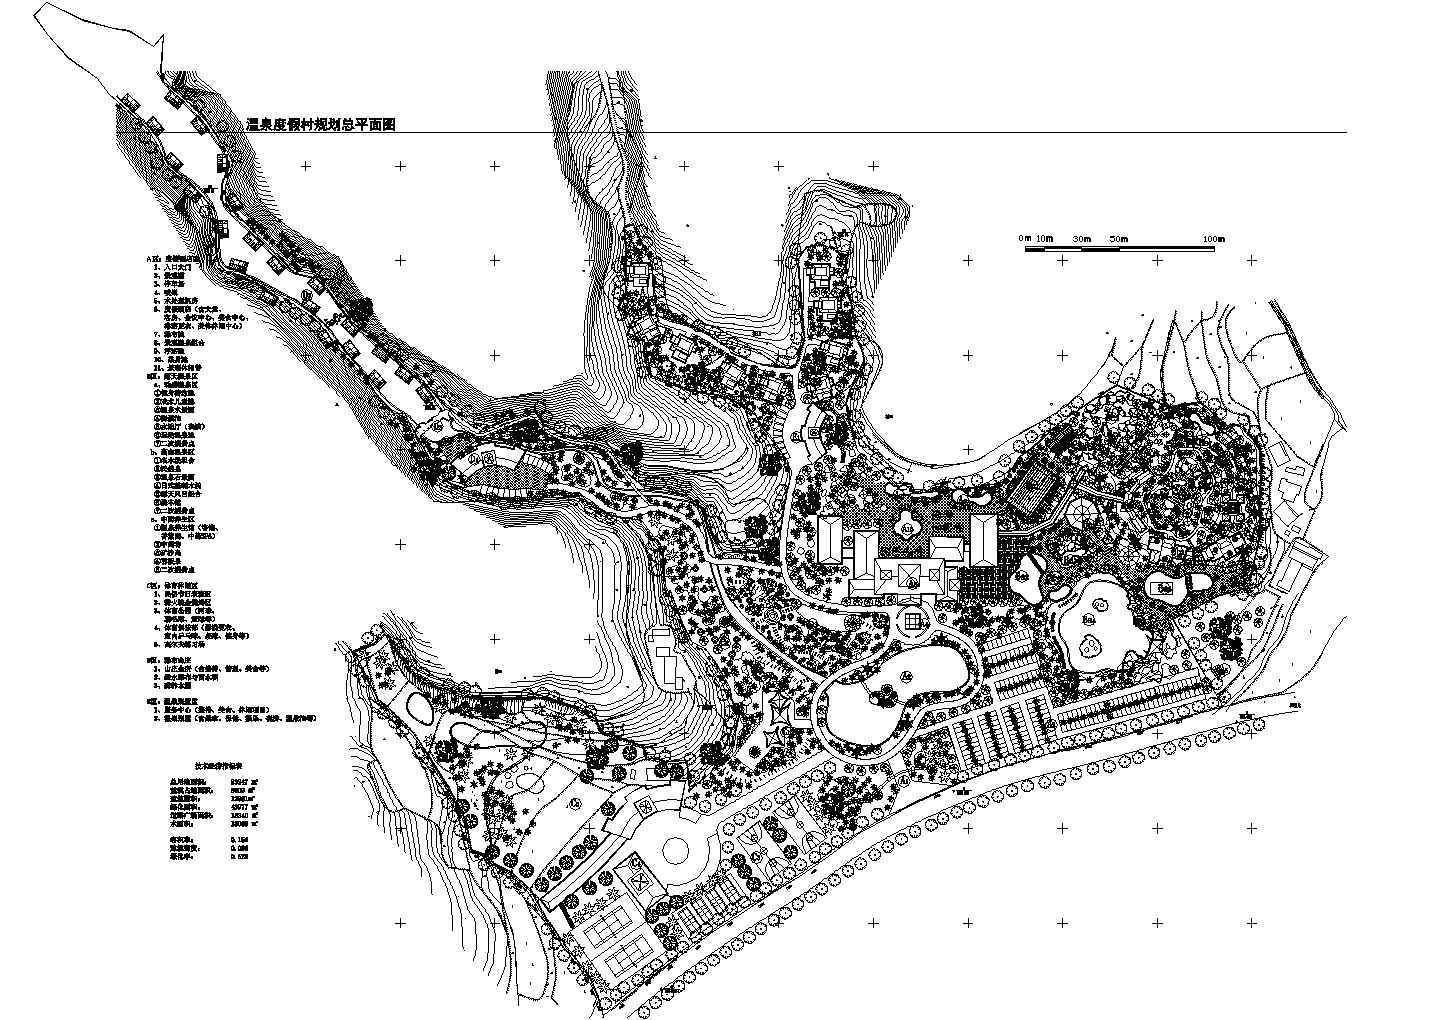 高级温泉度假村景观总规划平面设计CAD图纸